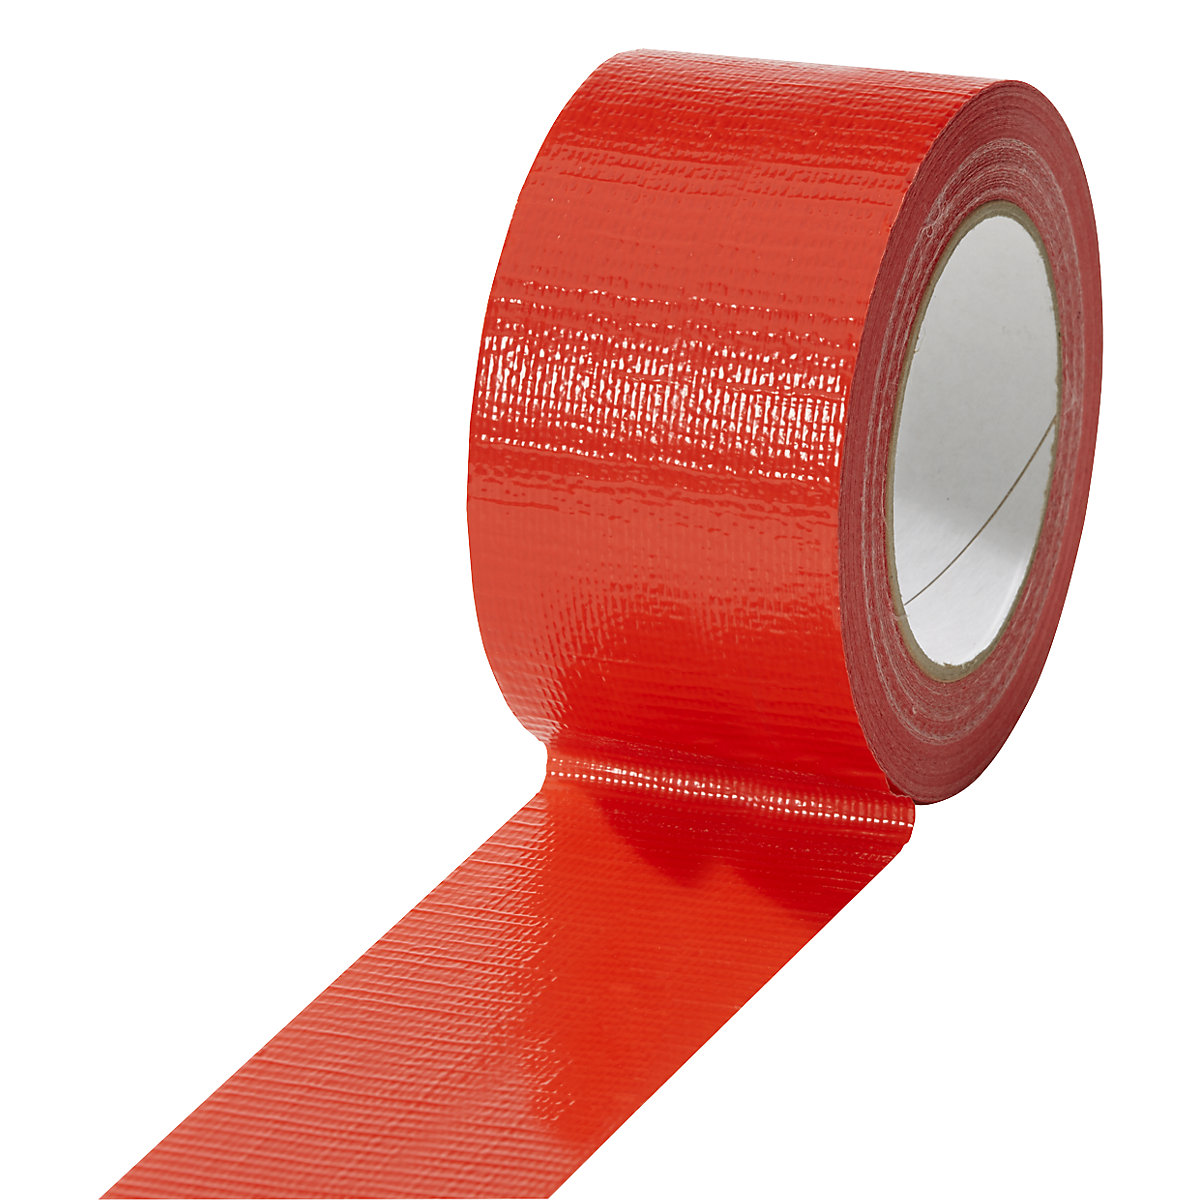 Traka od tkanine, u različitim bojama, pak. 18 rola, u crvenoj boji, širina trake 50 mm-8